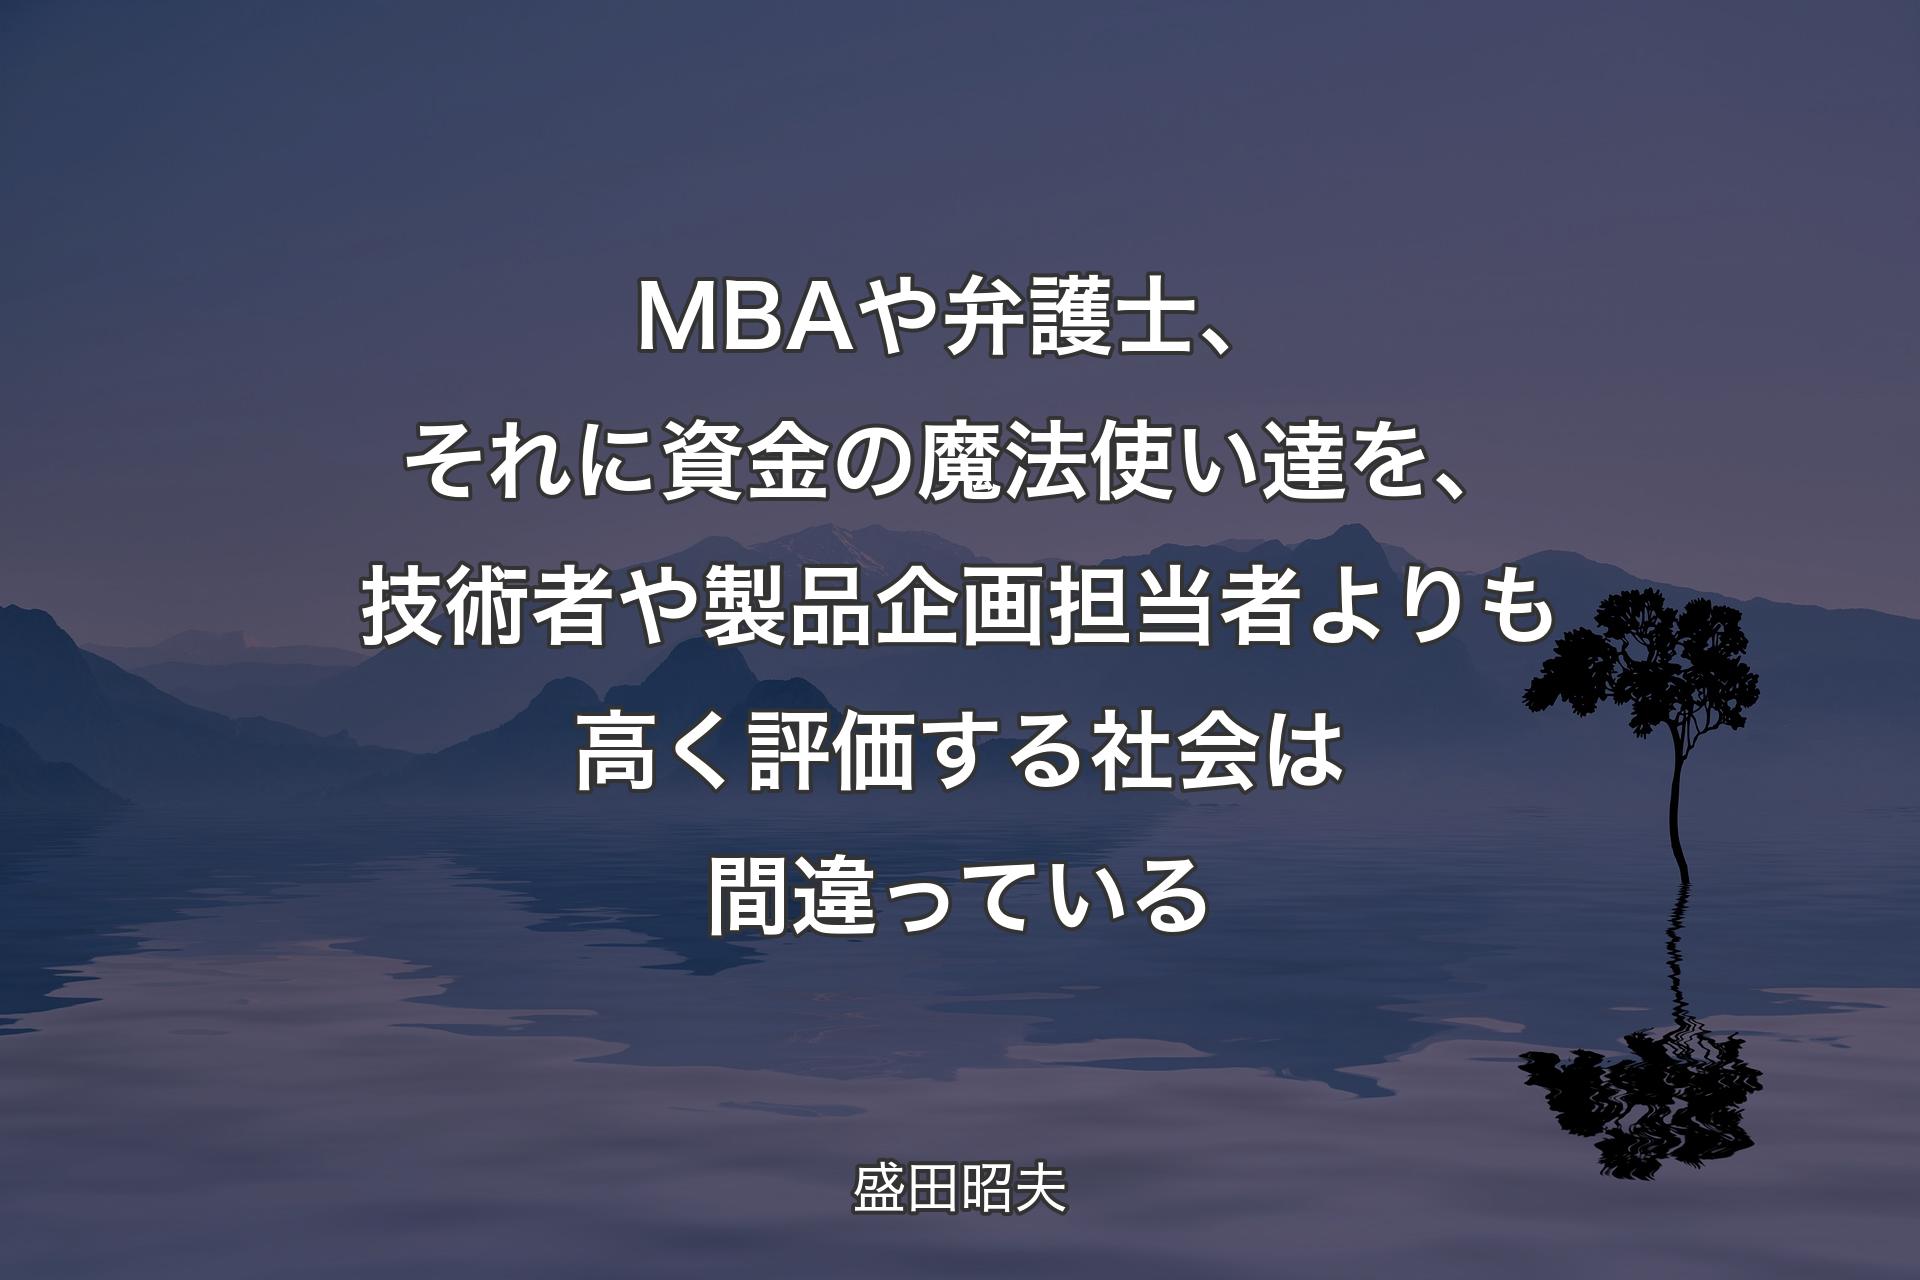 【背景4】MBAや弁護士、それに資金の魔法使い達を、技術者や製品企画担当者よりも高く評価する社会は間違っている - 盛田昭夫